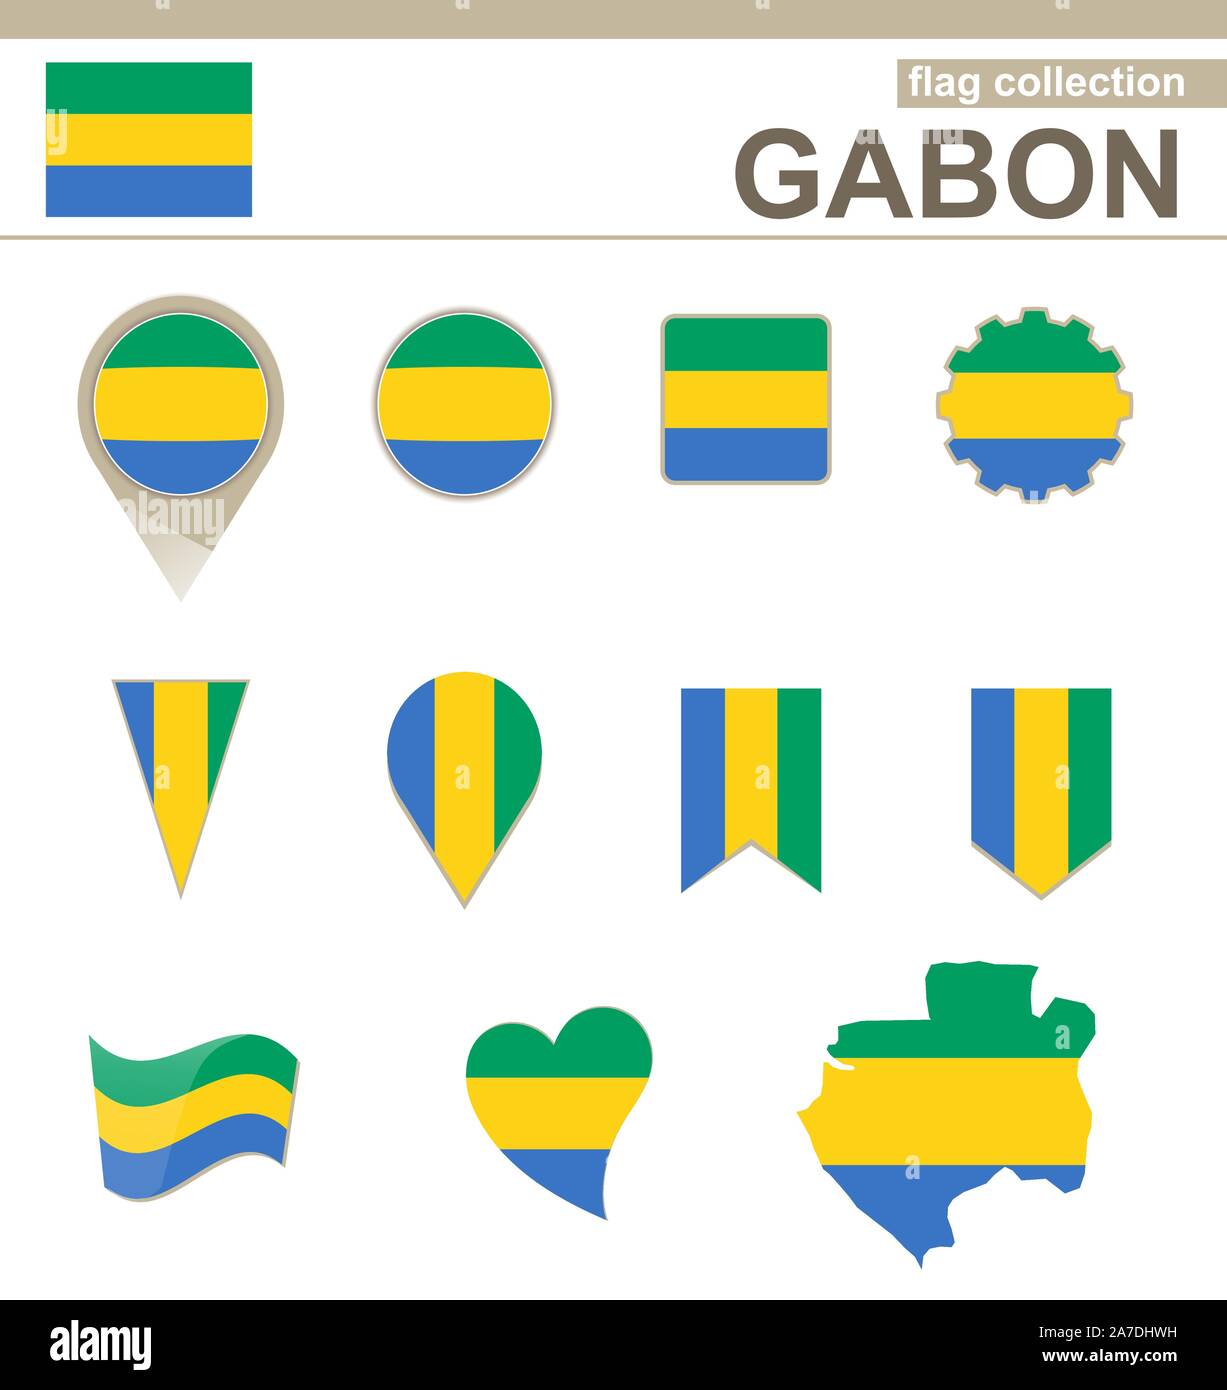 Gabon Flag Collection, 12 versions Stock Vector